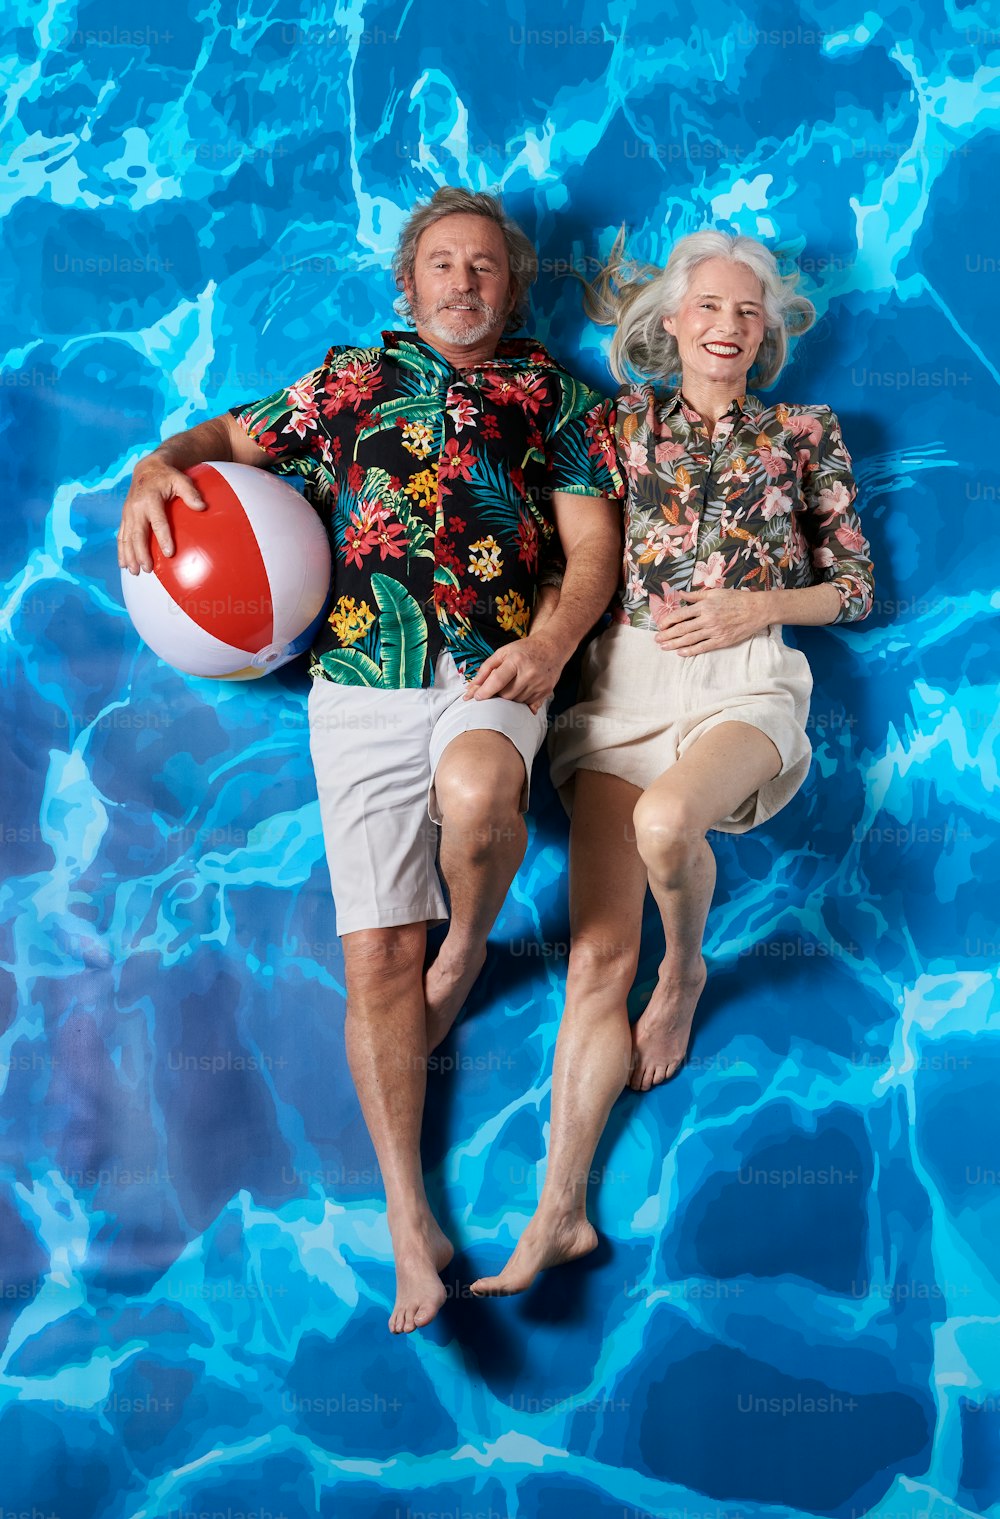 Un hombre y una mujer acostados en una piscina con una pelota